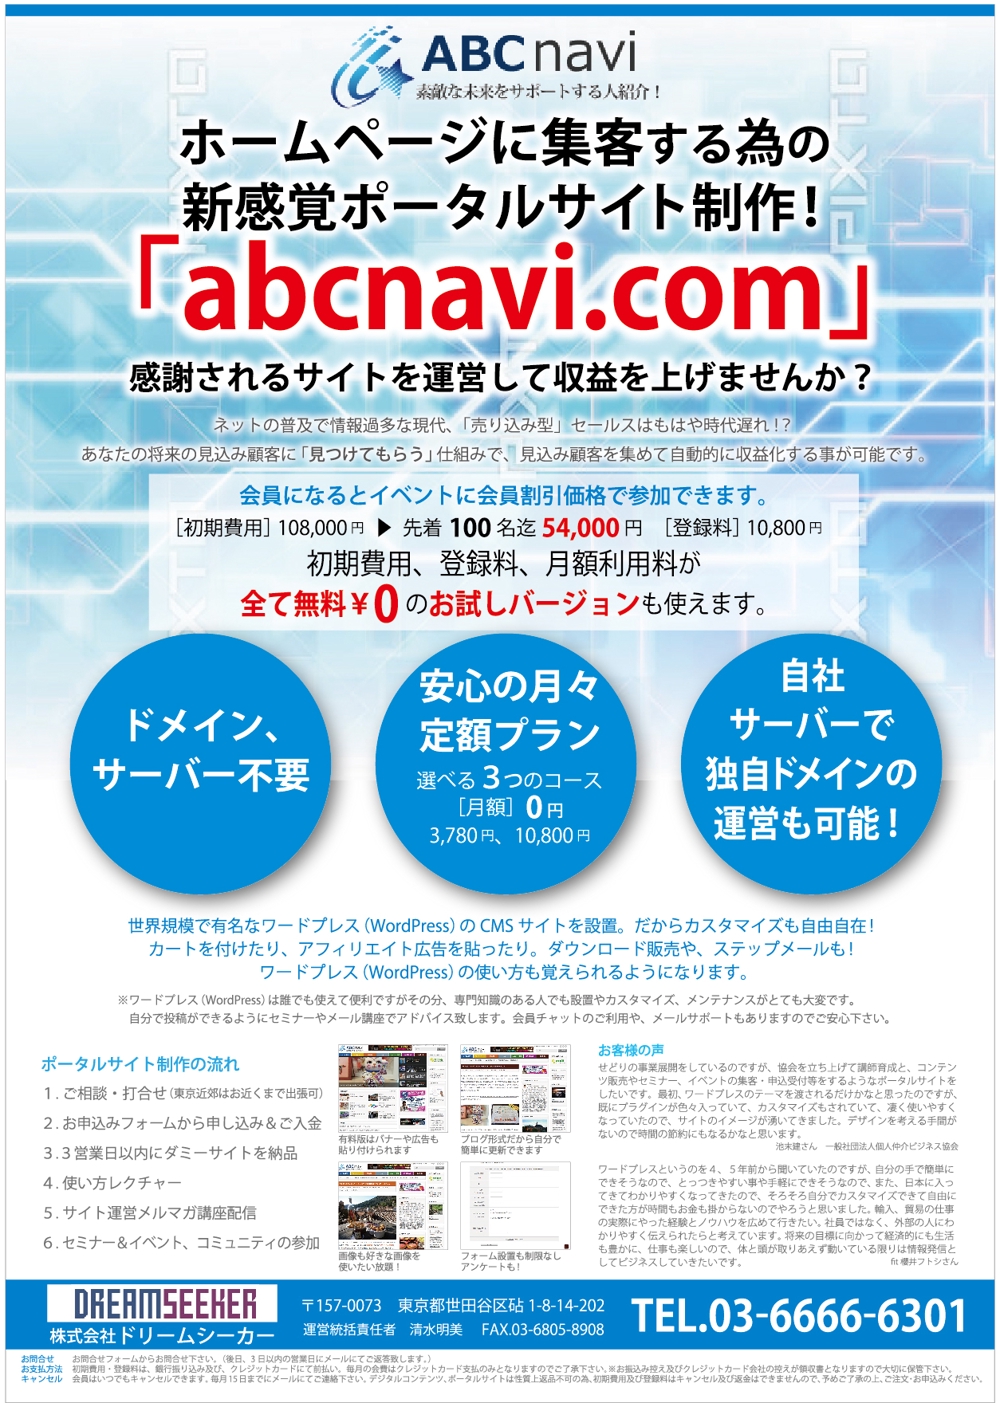 ビジネス会員サービス「ABC navi.com」の利用者募集チラシの制作